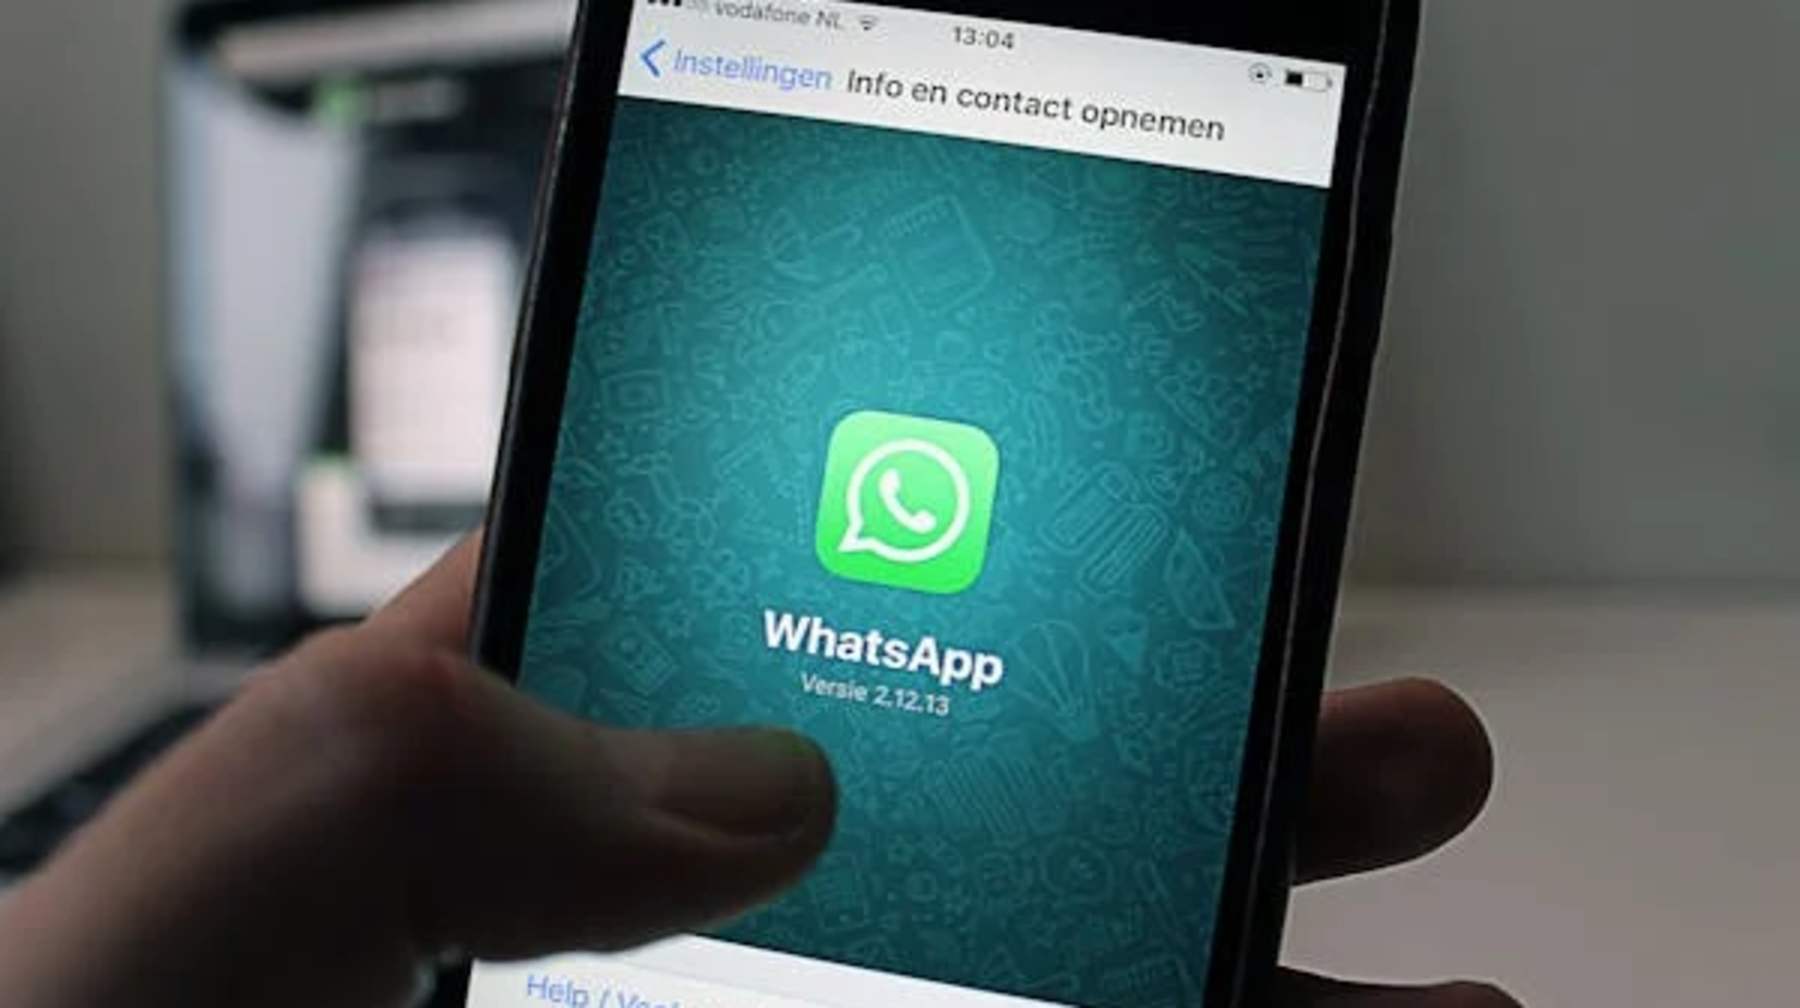 Акмолинские полицейские предупреждают граждан о мошенничестве через WhatsApp